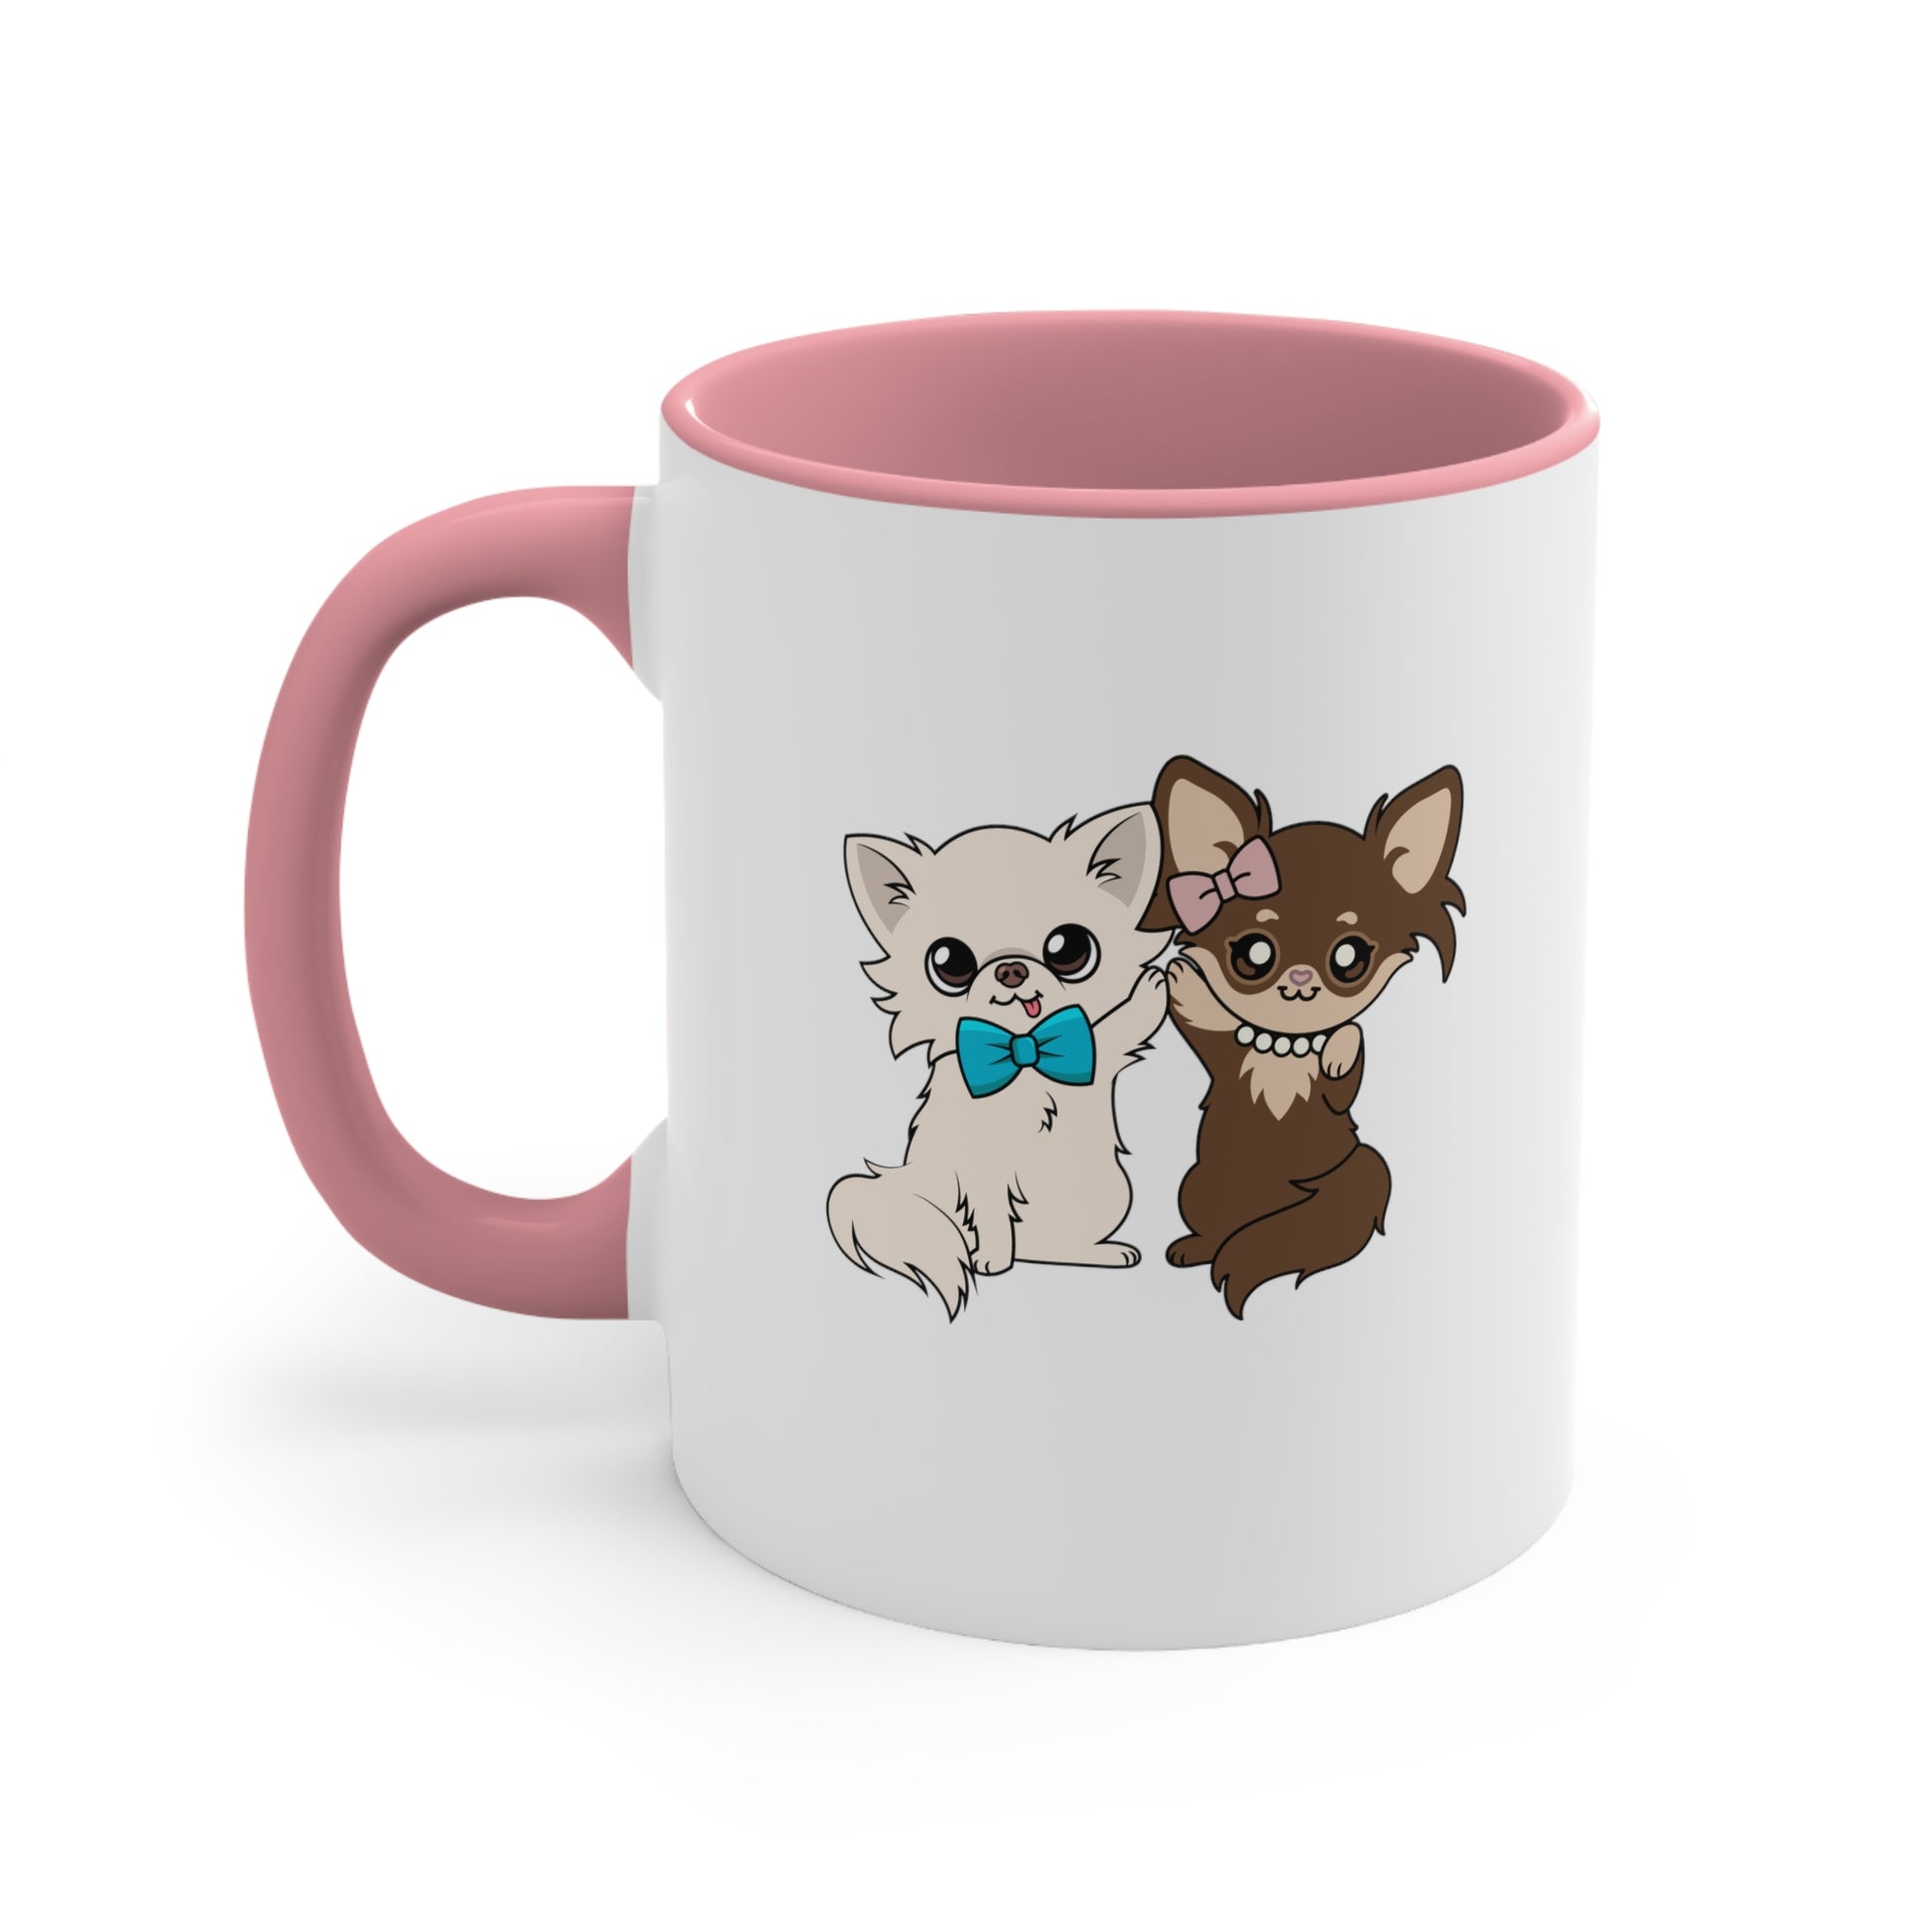 CedLou's Signature Mug - Tiny Chihuahua Shop